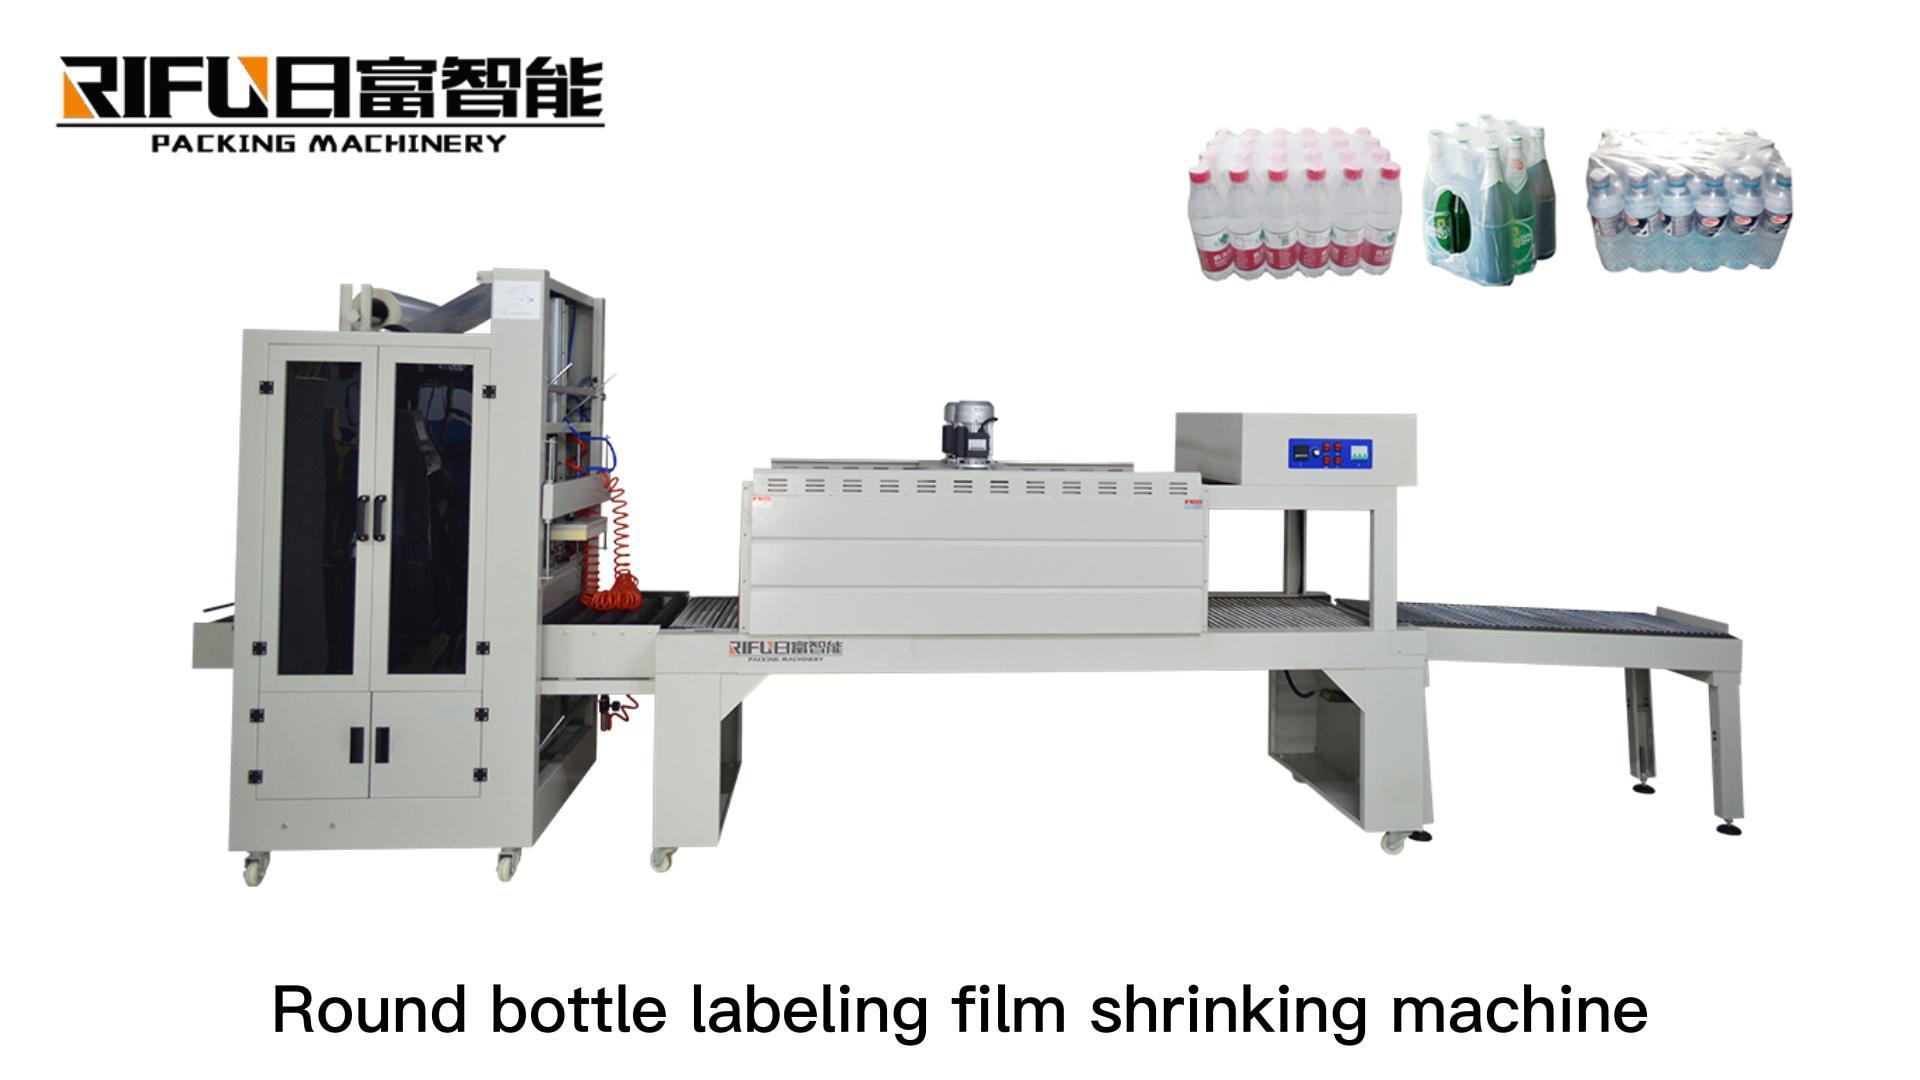 Finished round bottle labeling film shrinking machine